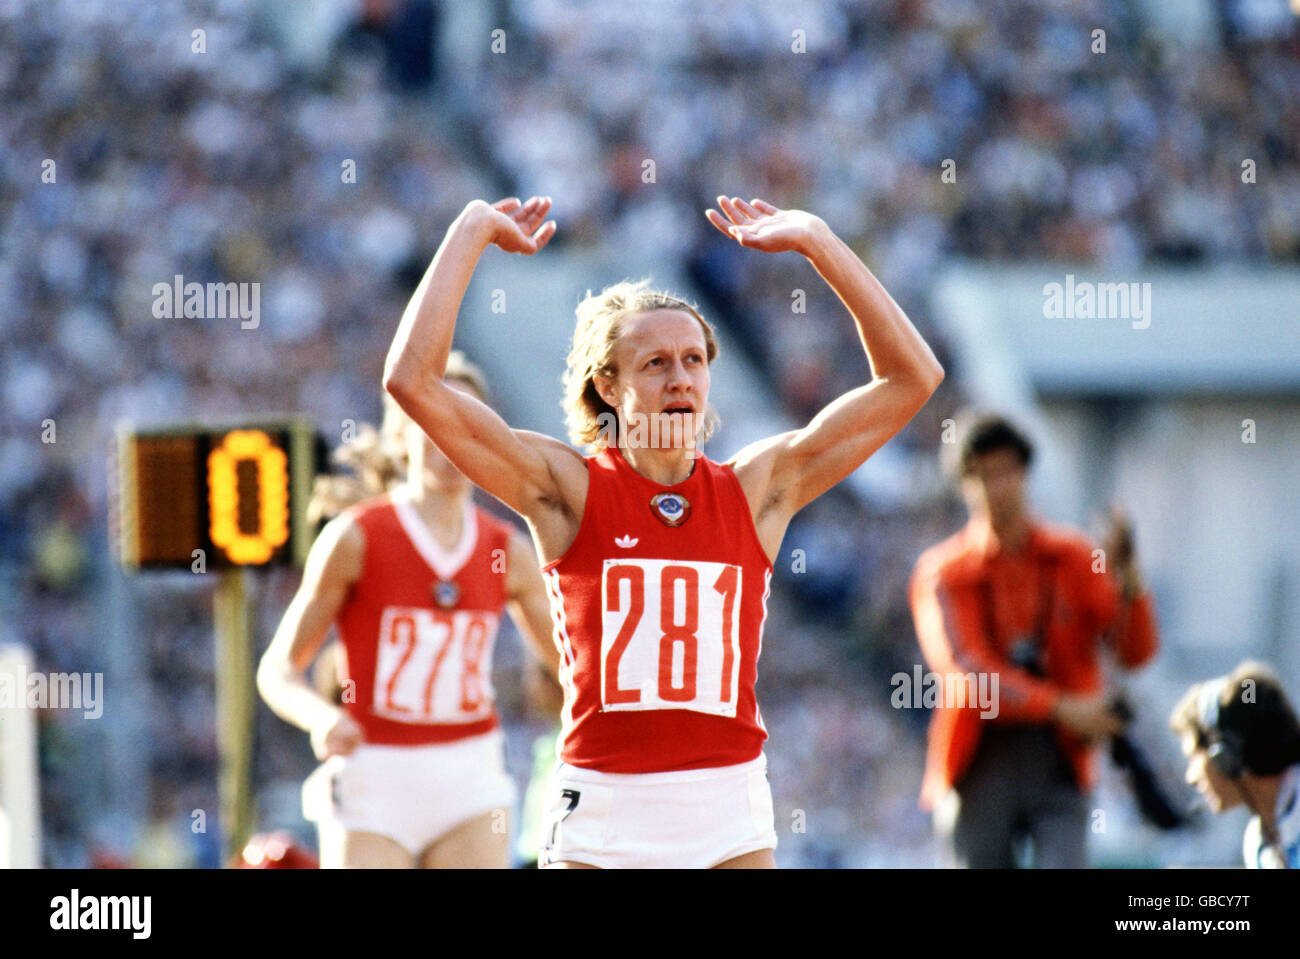 Atletica leggera - Giochi Olimpici di Mosca 1980 - finale femminile da 800 m. Nadyezda Olizarenko dell'URSS (281) celebra la vittoria dell'oro in un nuovo record mondiale di 1 min 53,43 sec. Foto Stock